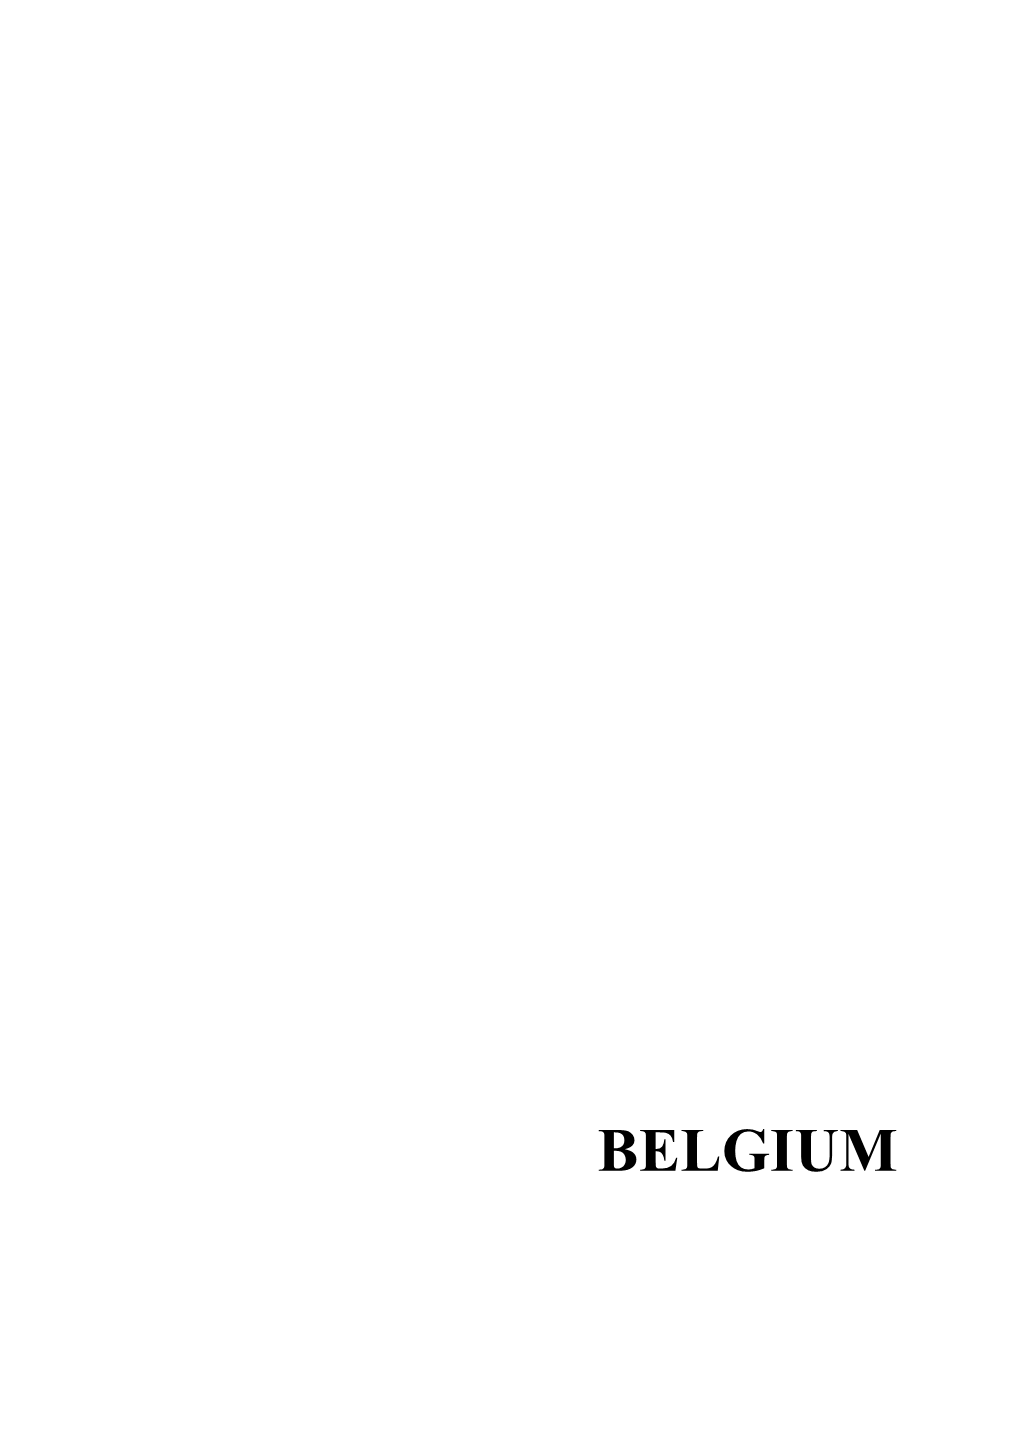 Belgium 62 Belgium Belgium